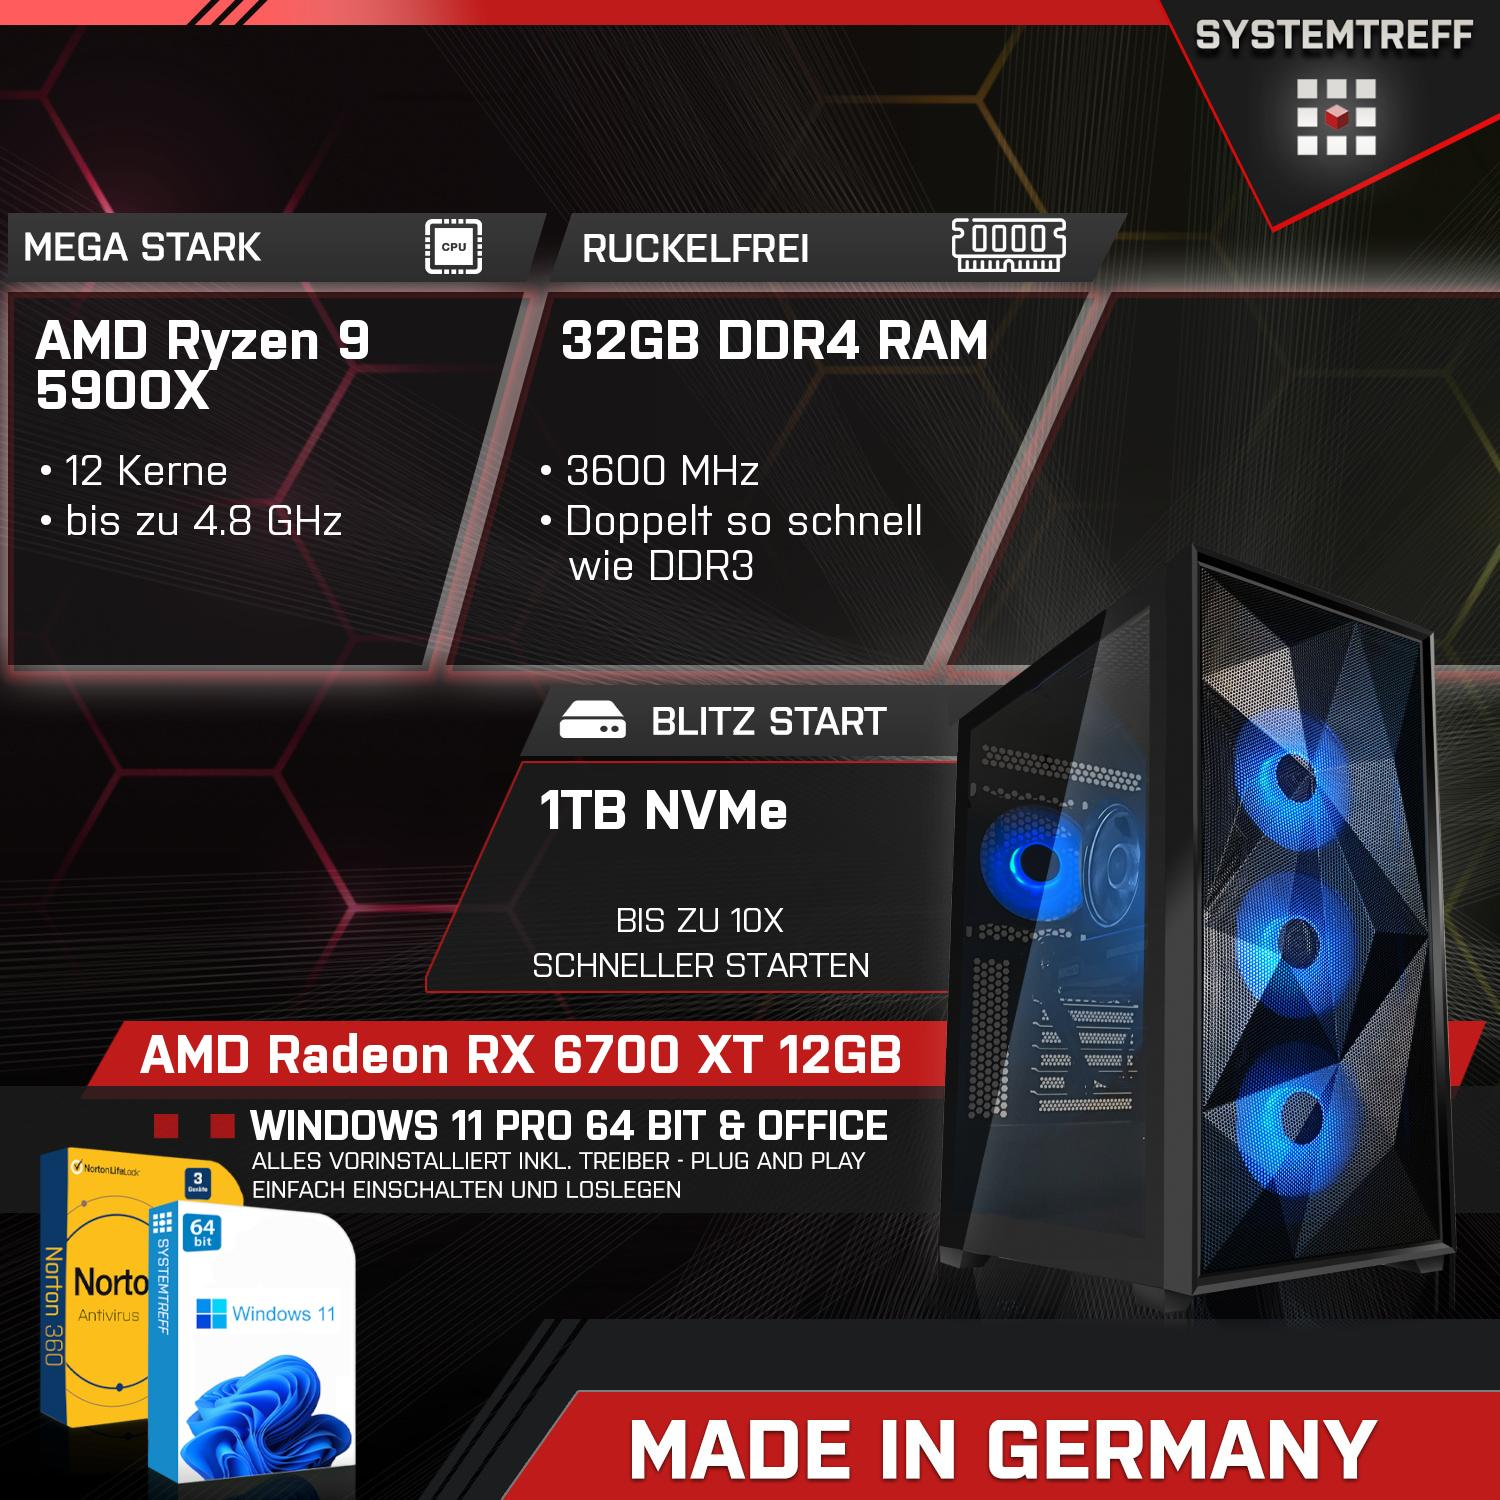 SYSTEMTREFF Gaming Komplett AMD GDDR6, 6700 mit 5900X 12 32 XT mSSD, RX 5900X, Prozessor, GB Ryzen 9 GB PC GB 1000 AMD RAM, Radeon Komplett 12GB